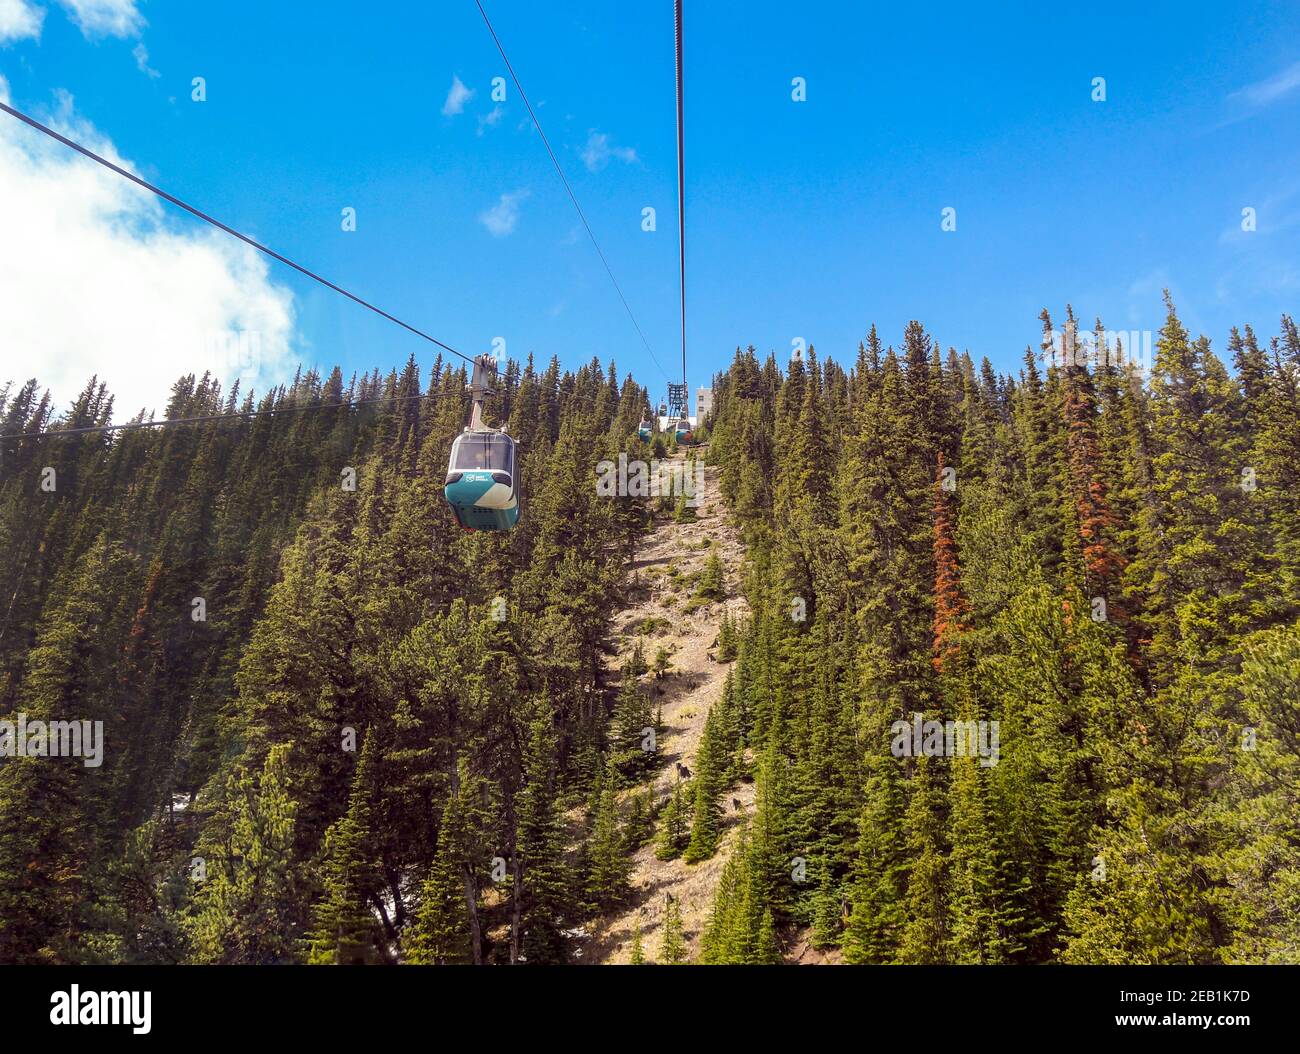 BANFF, ab, KANADA - JUNI 2018: Gondeln der Seilbahn auf- und abwärts vom Sulphur Mountain, einer Touristenattraktion in Banff Stockfoto